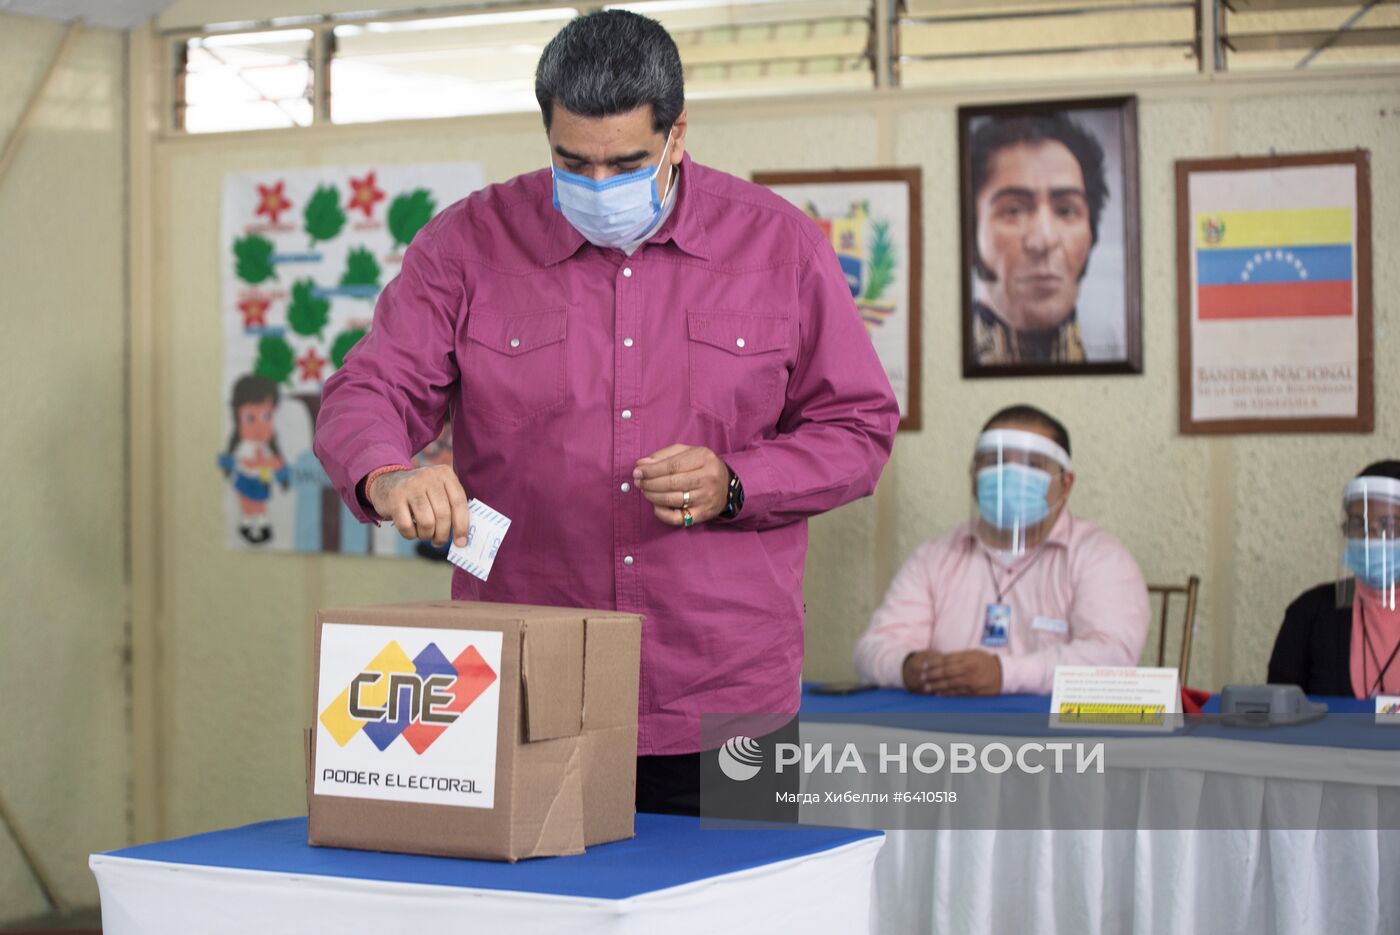 Парламентские выборы в Венесуэле